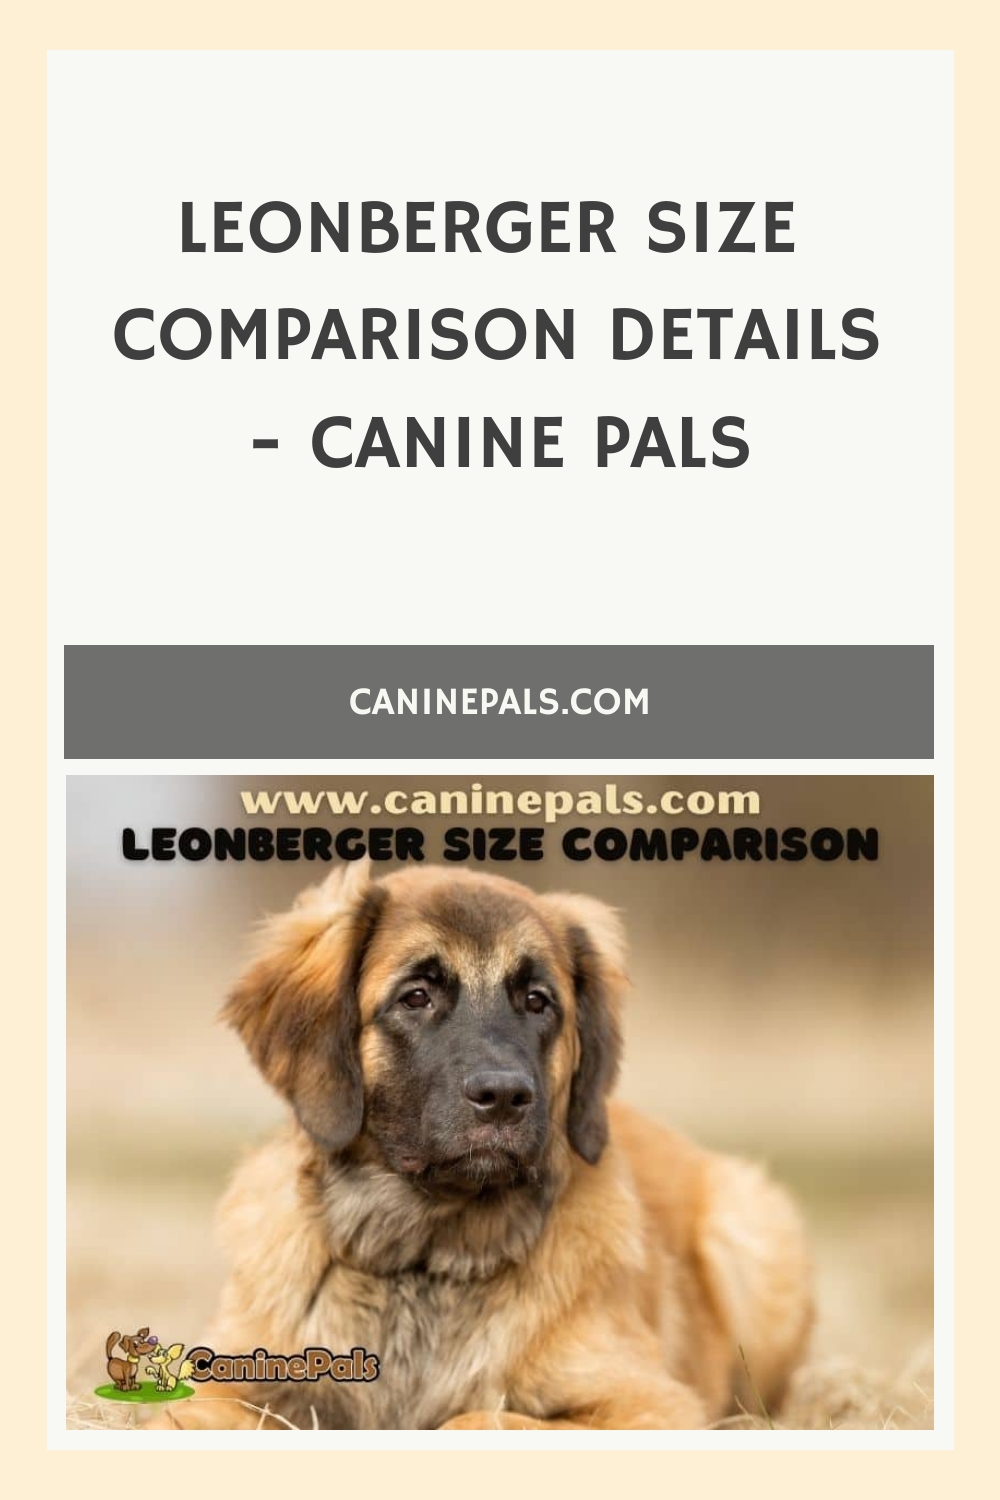 Leonberger Size Comparison Details